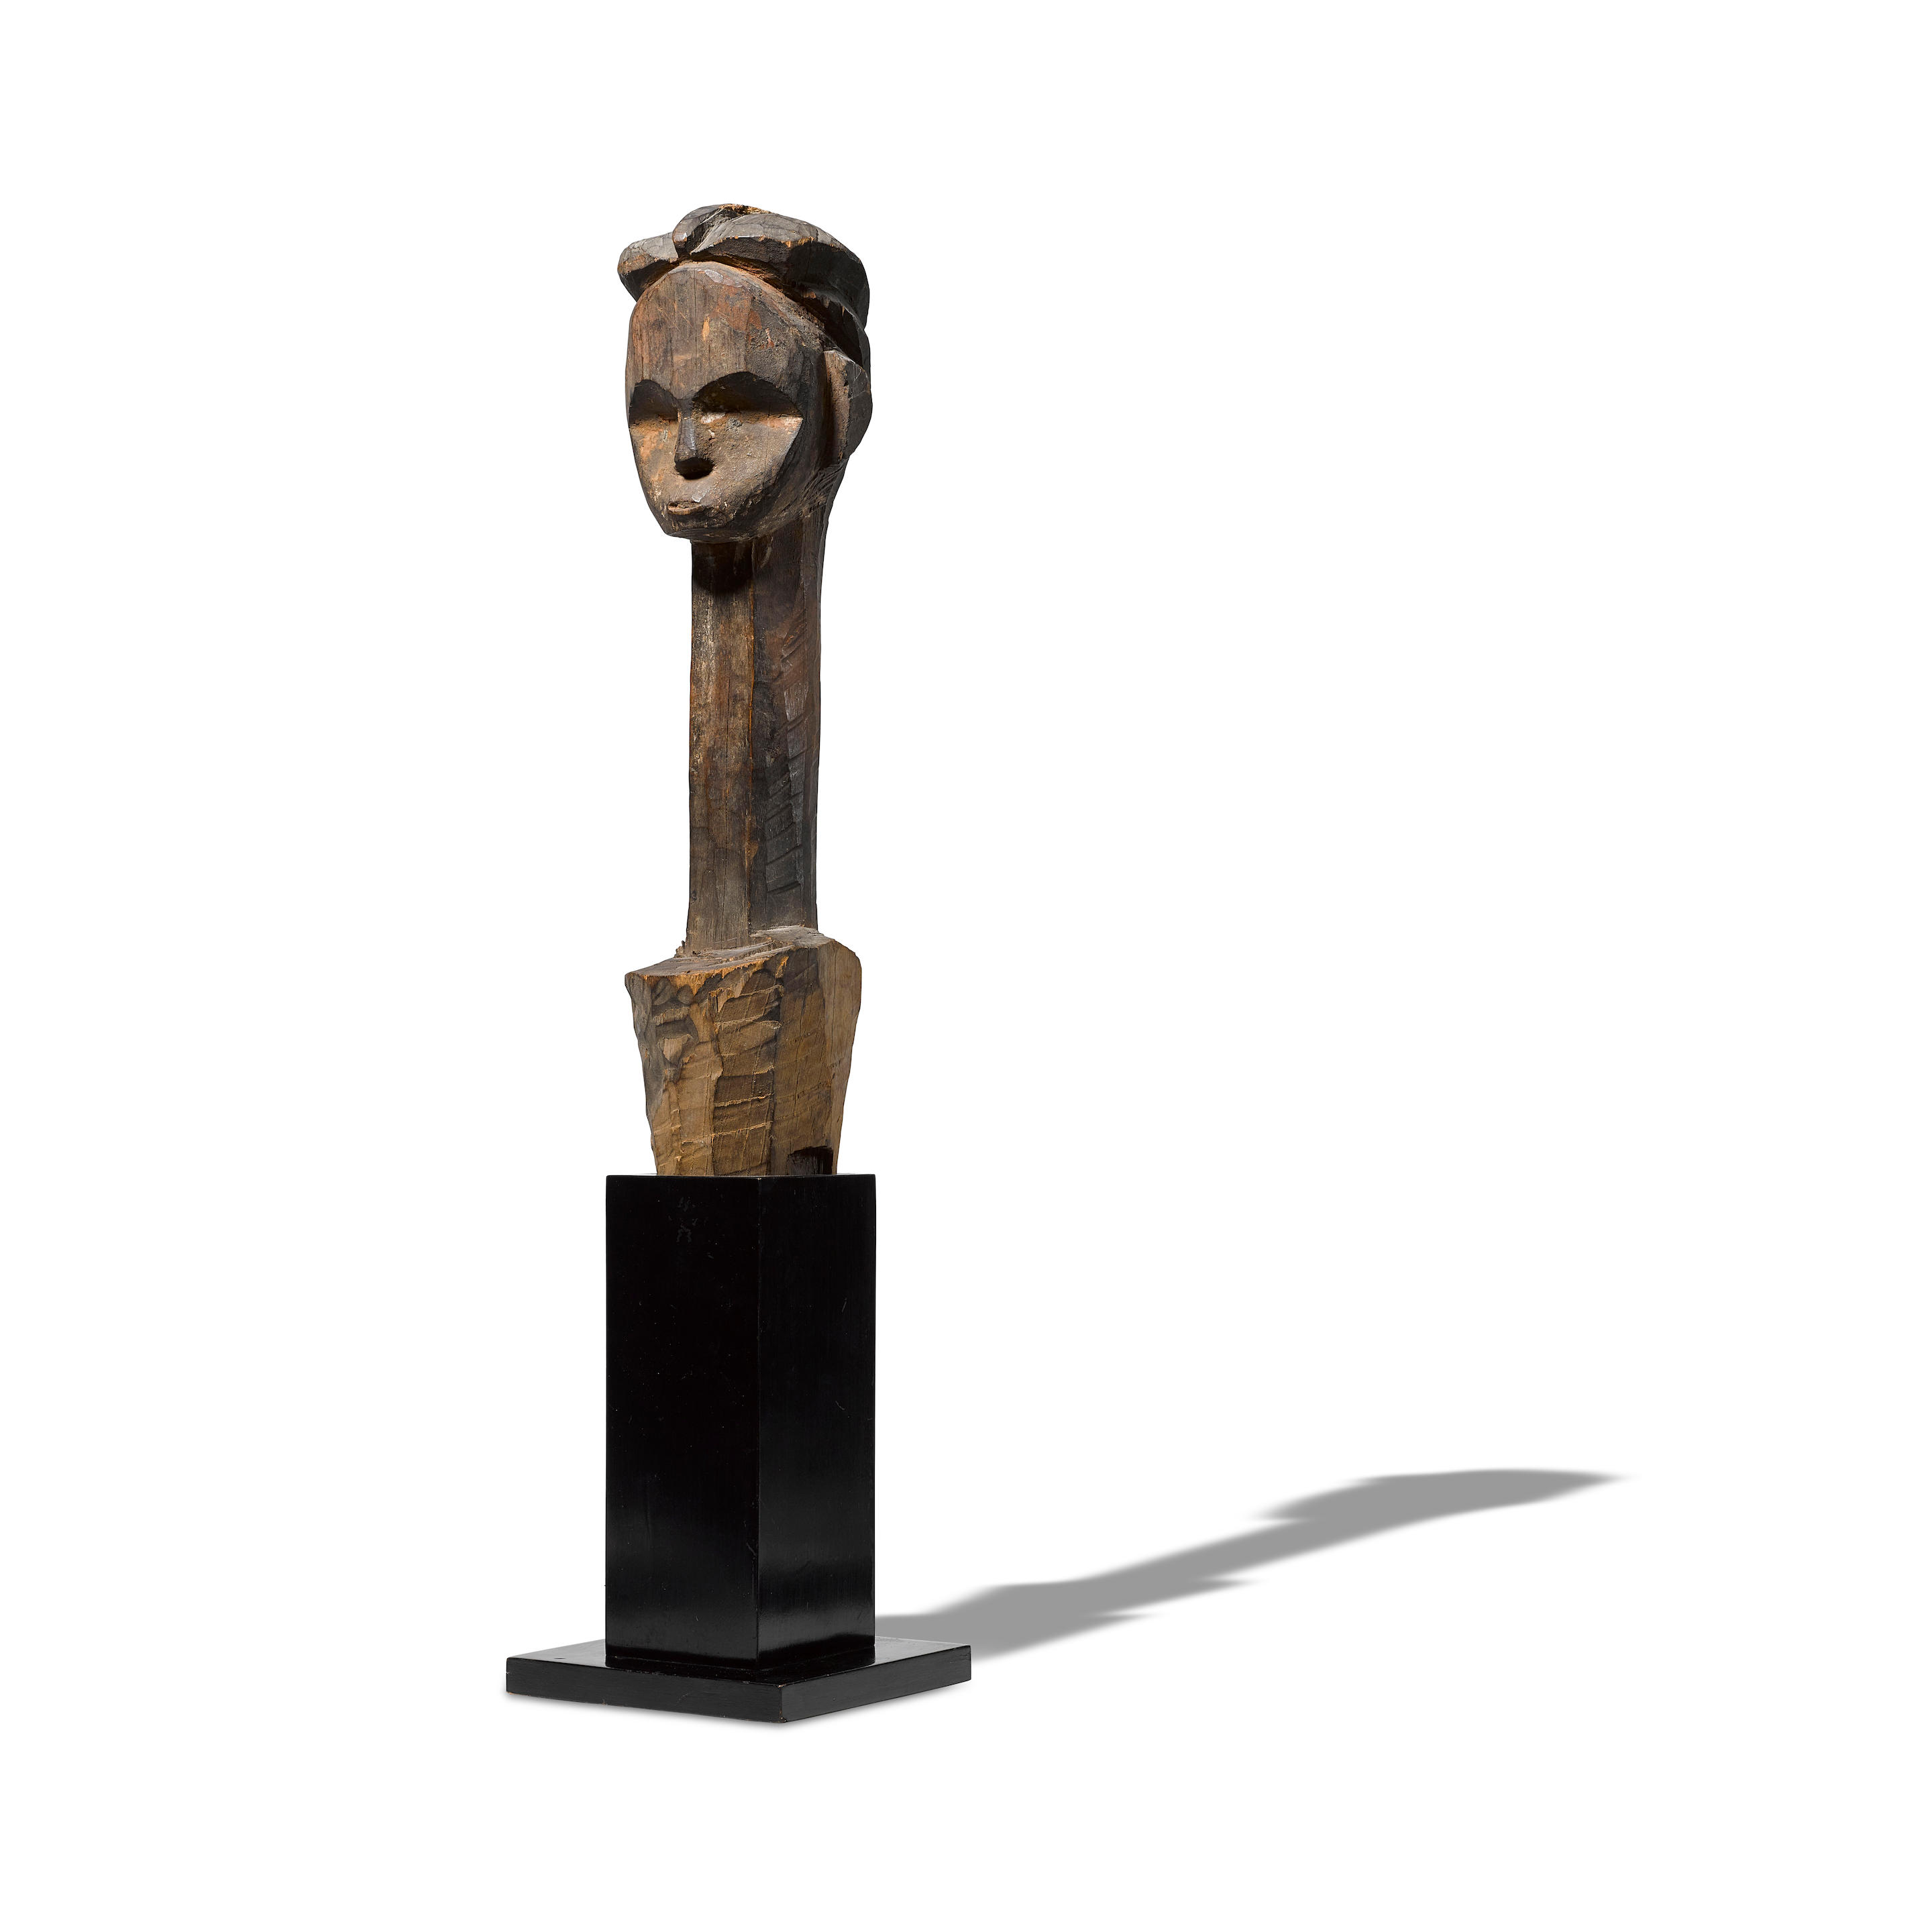 Mitsogho Reliquary Head, Gabon